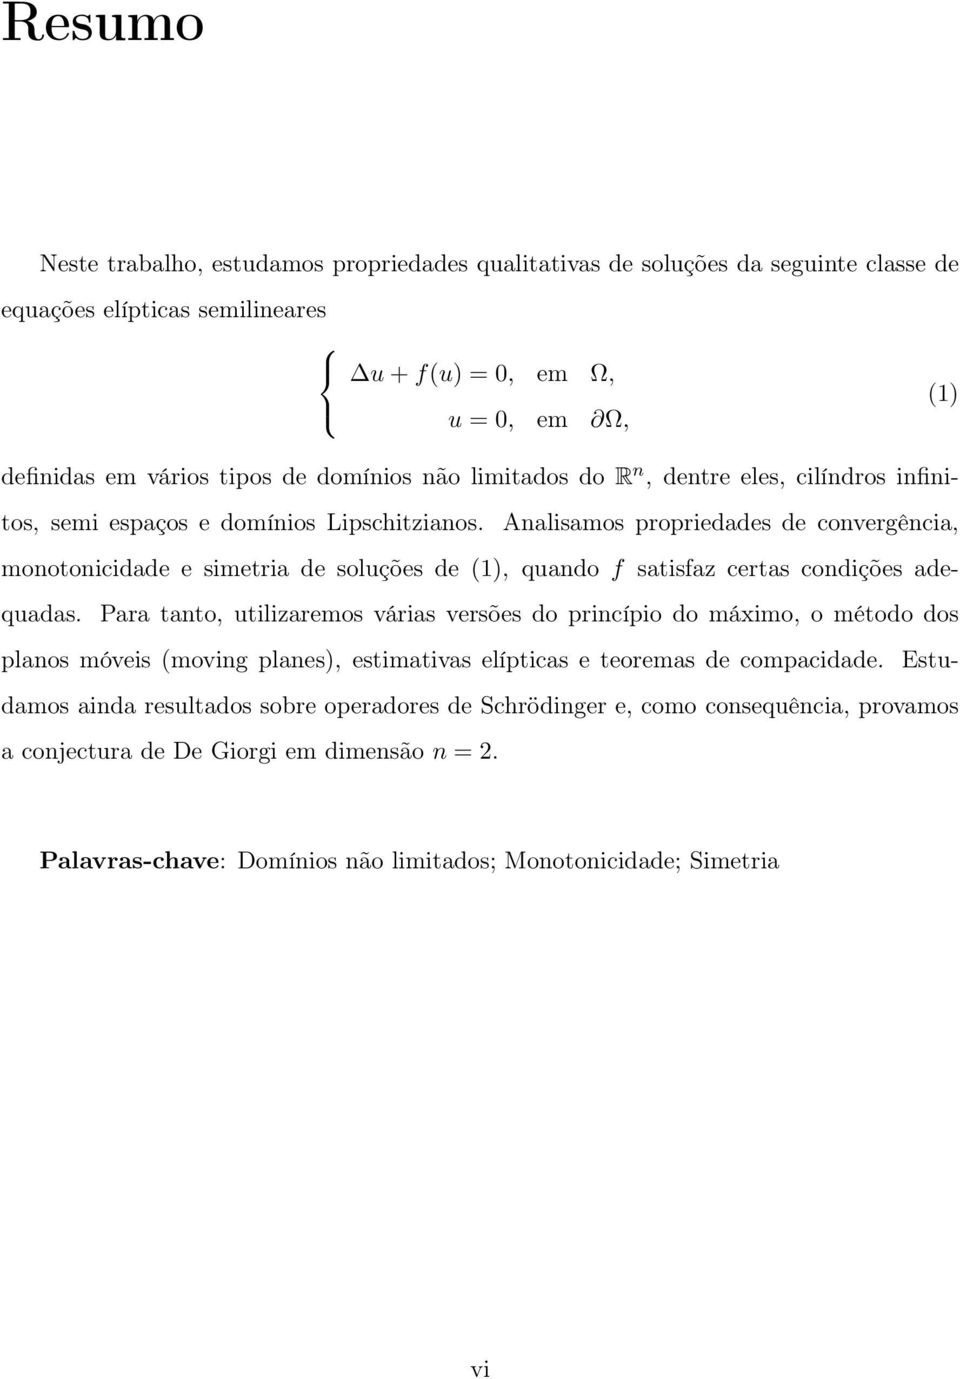 Analisamos propriedades de convergência, monotonicidade e simetria de soluções de (1), quando f satisfaz certas condições adequadas.